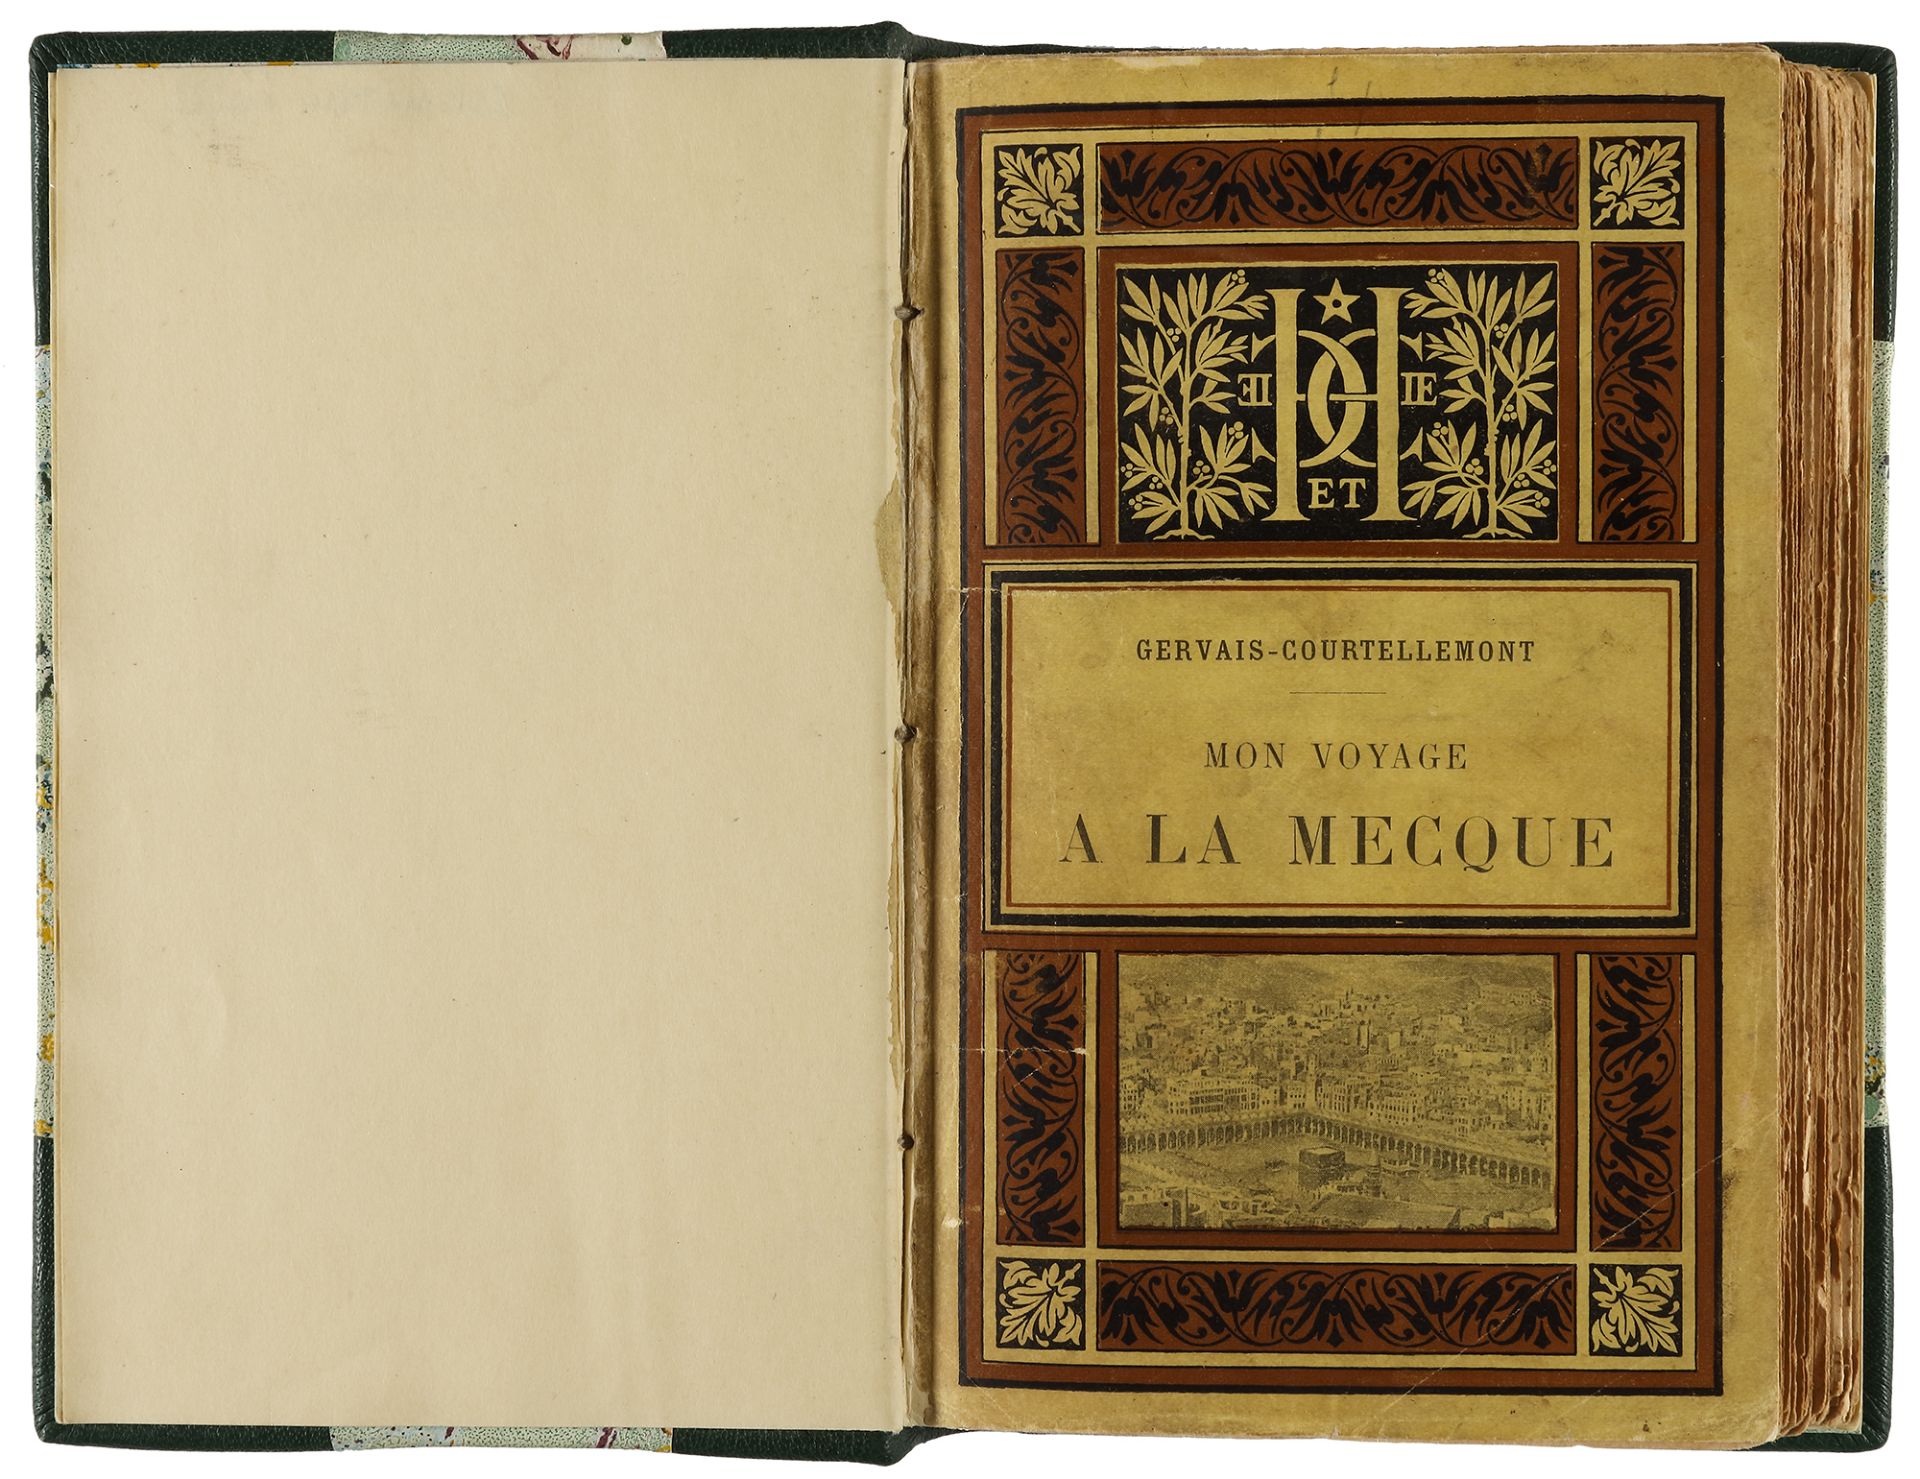 ‘MON VOYAGE A LA MECQUE’ (MY TRIP TO MECCA), BY GERVAIS-COURTELLEMONT, 1896 - Image 3 of 5